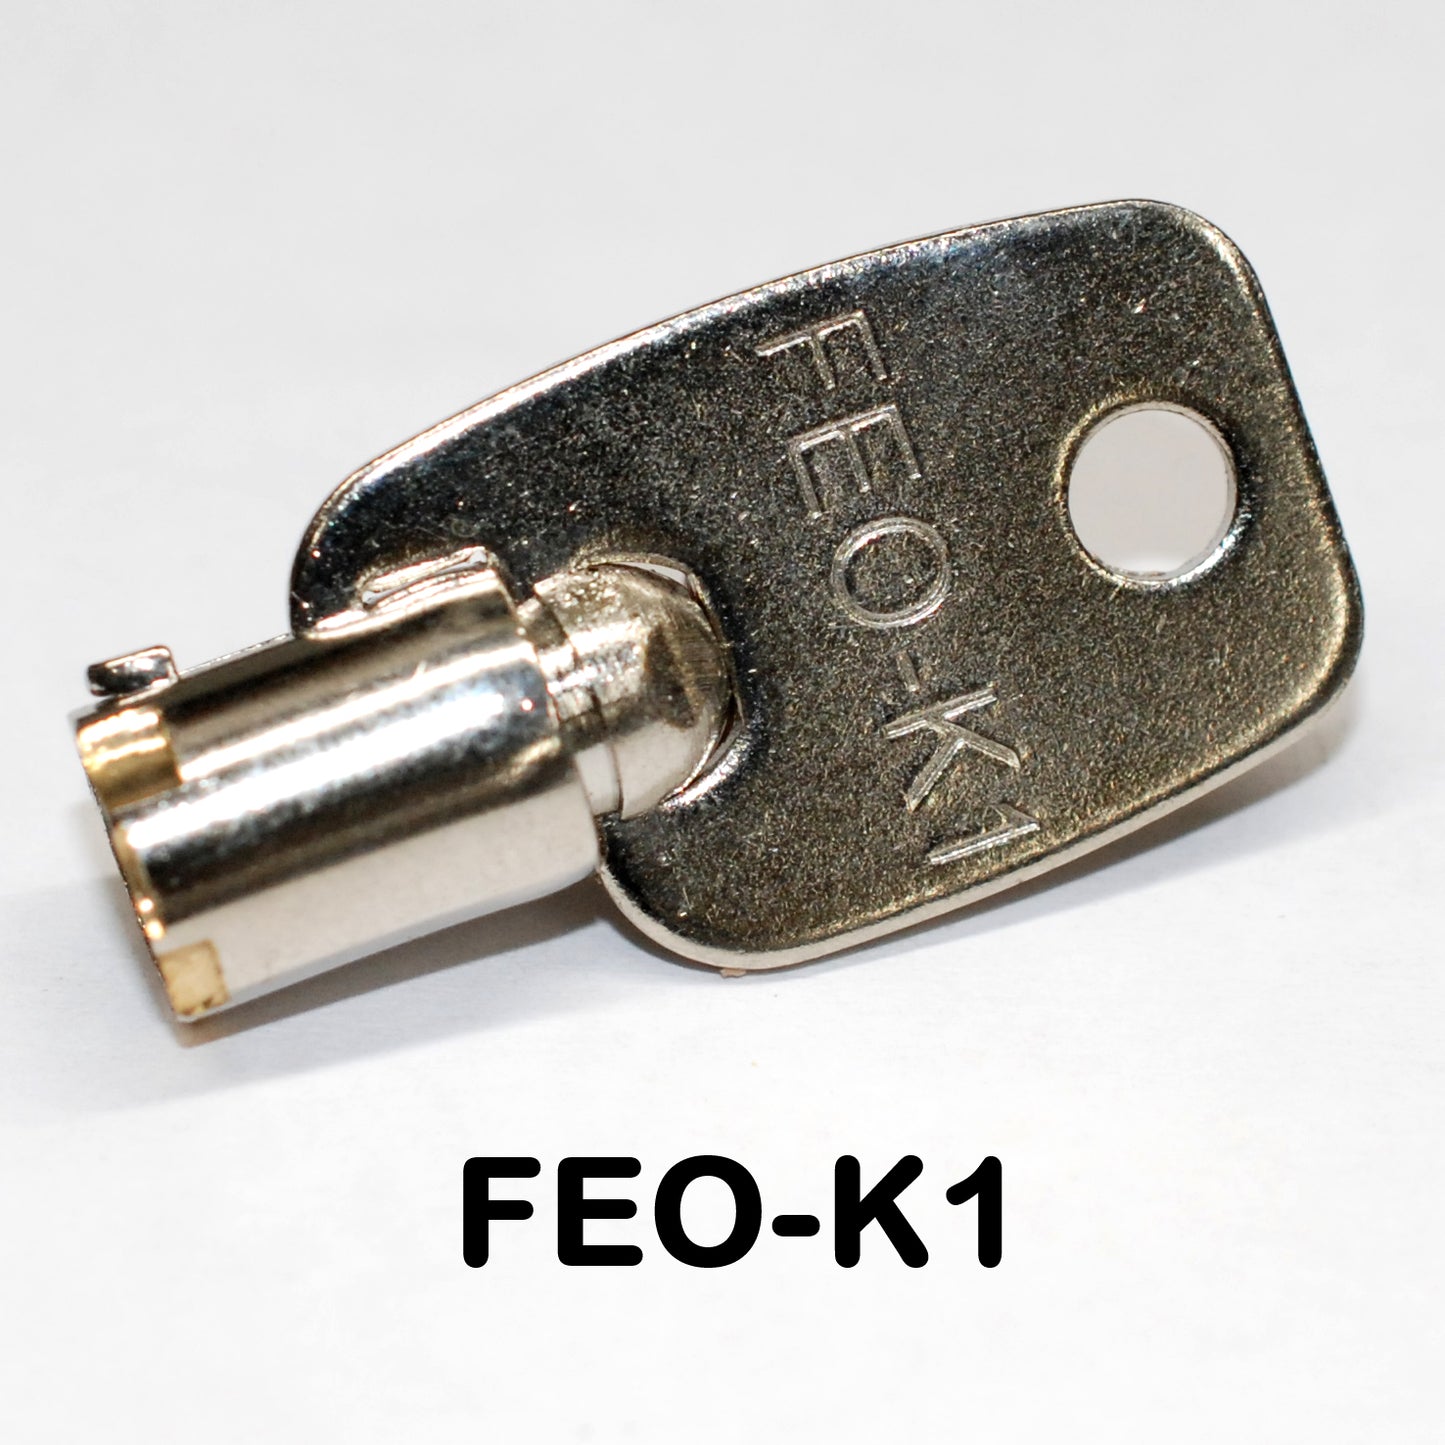 FEO K1 , FEOK1 General Elevator Fire Service Key